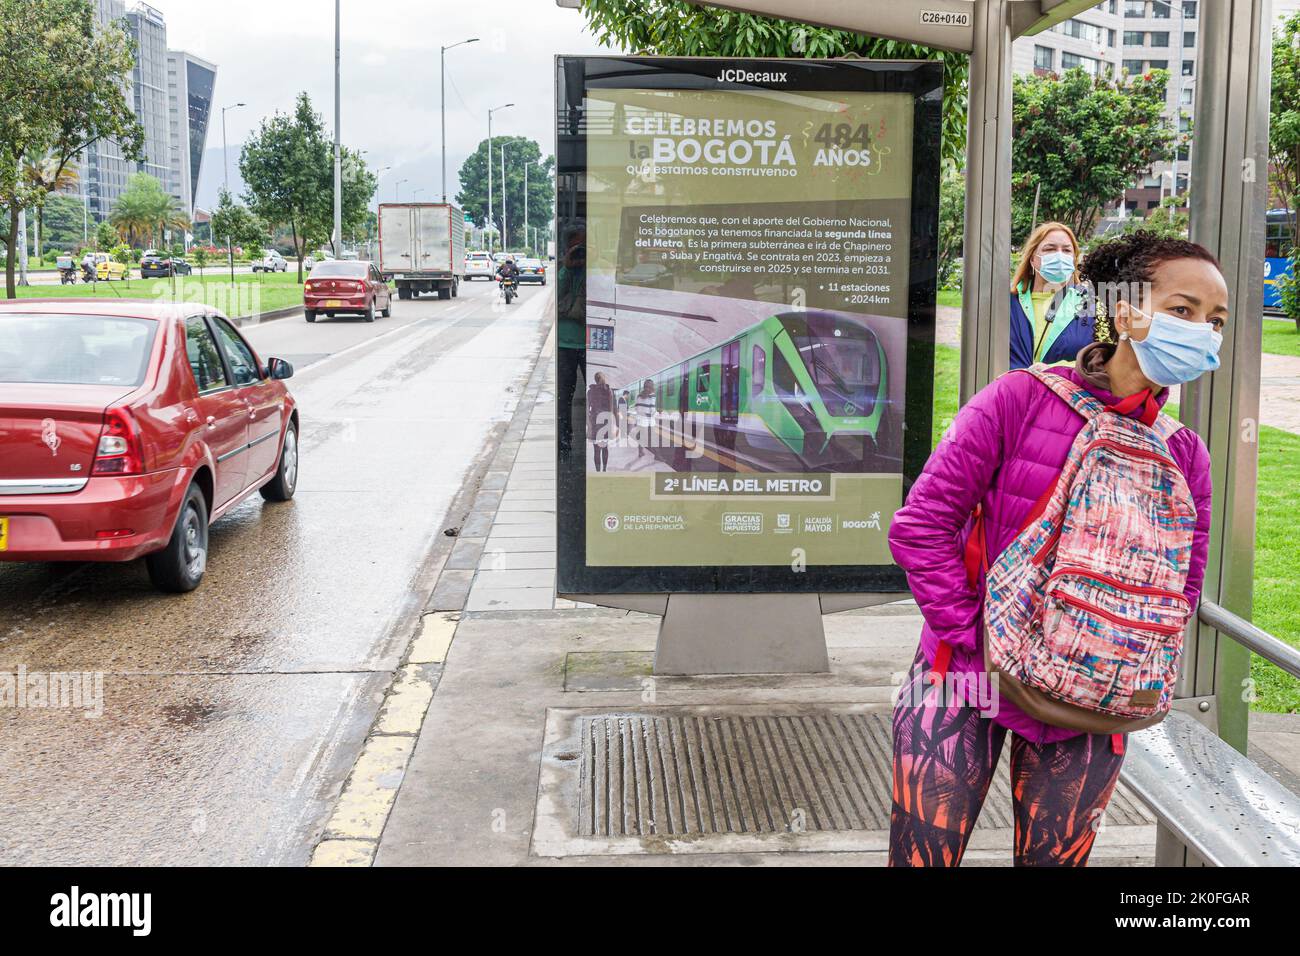 Bogota Colombie,Avenida El Dorado Calle 26,bus-stop publicité panneau d'affichage rapide transit Metro projet,femme femmes recherche,Colombia Colomb Banque D'Images